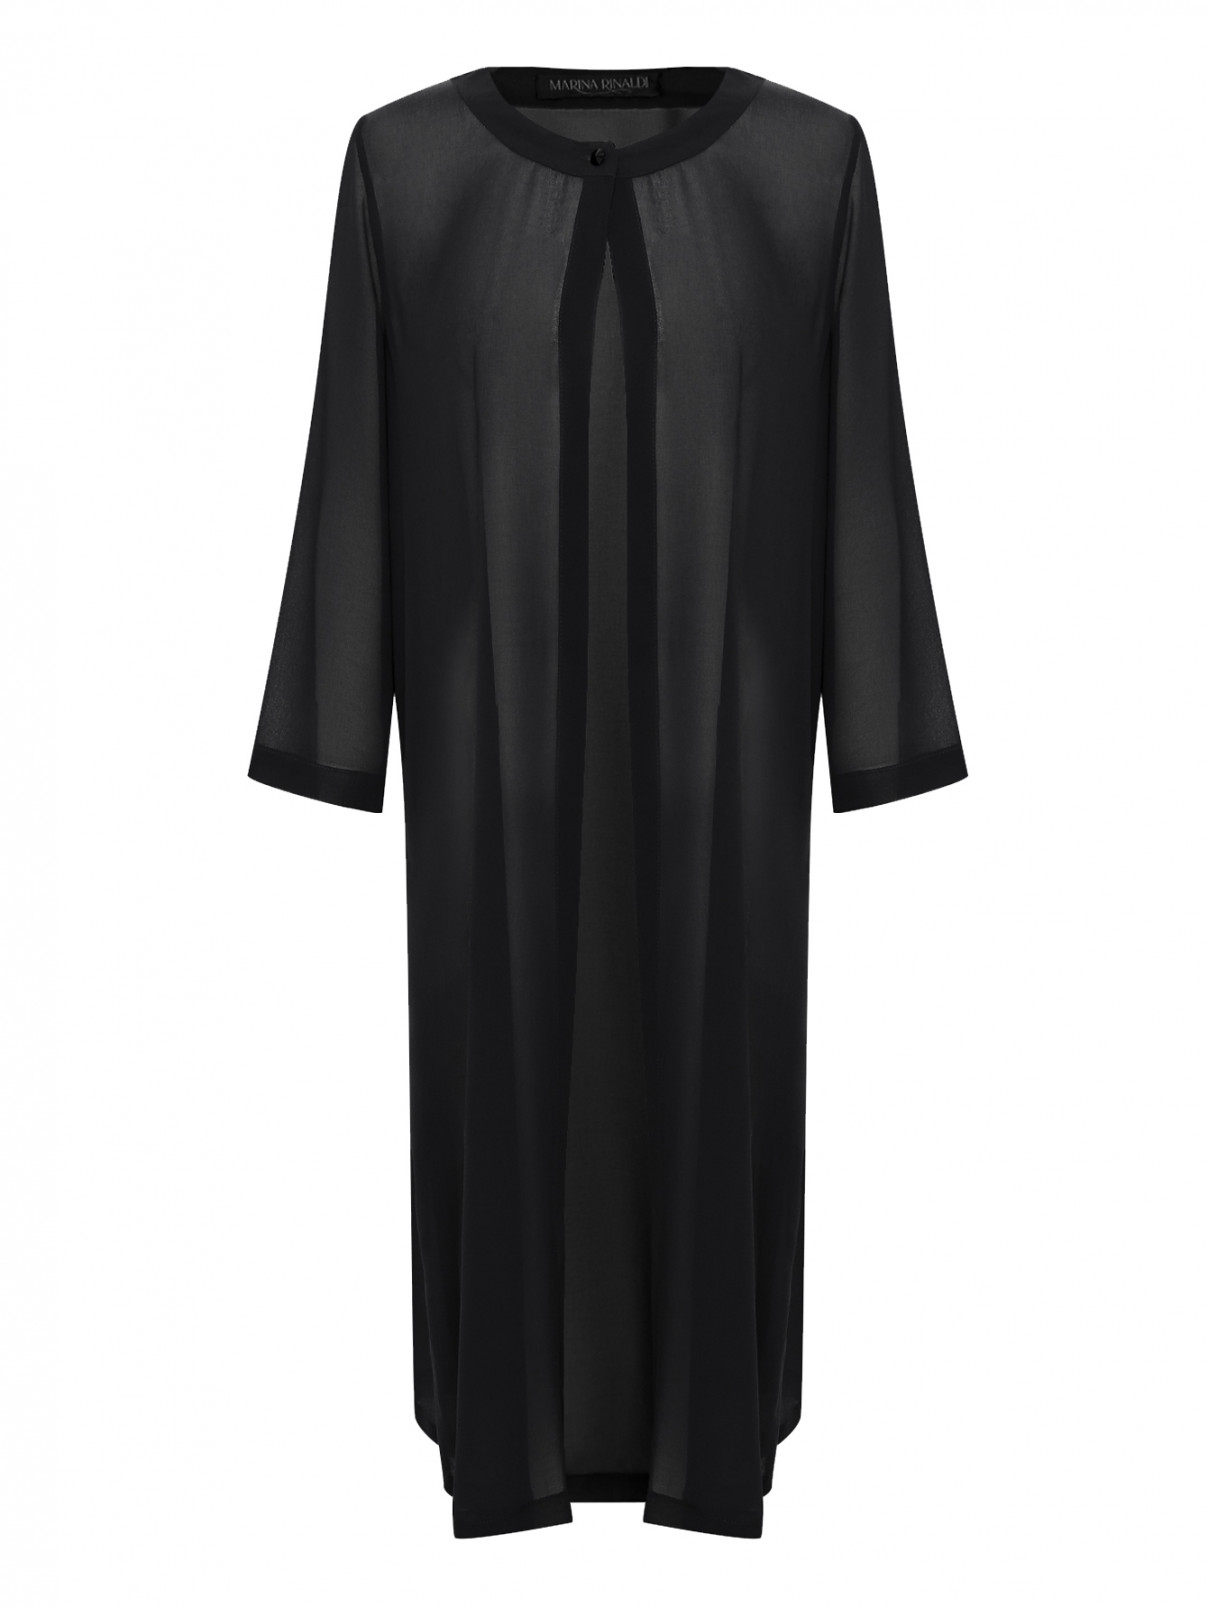 Удлиненный полупрозрачный кардиган Marina Rinaldi  –  Общий вид  – Цвет:  Черный